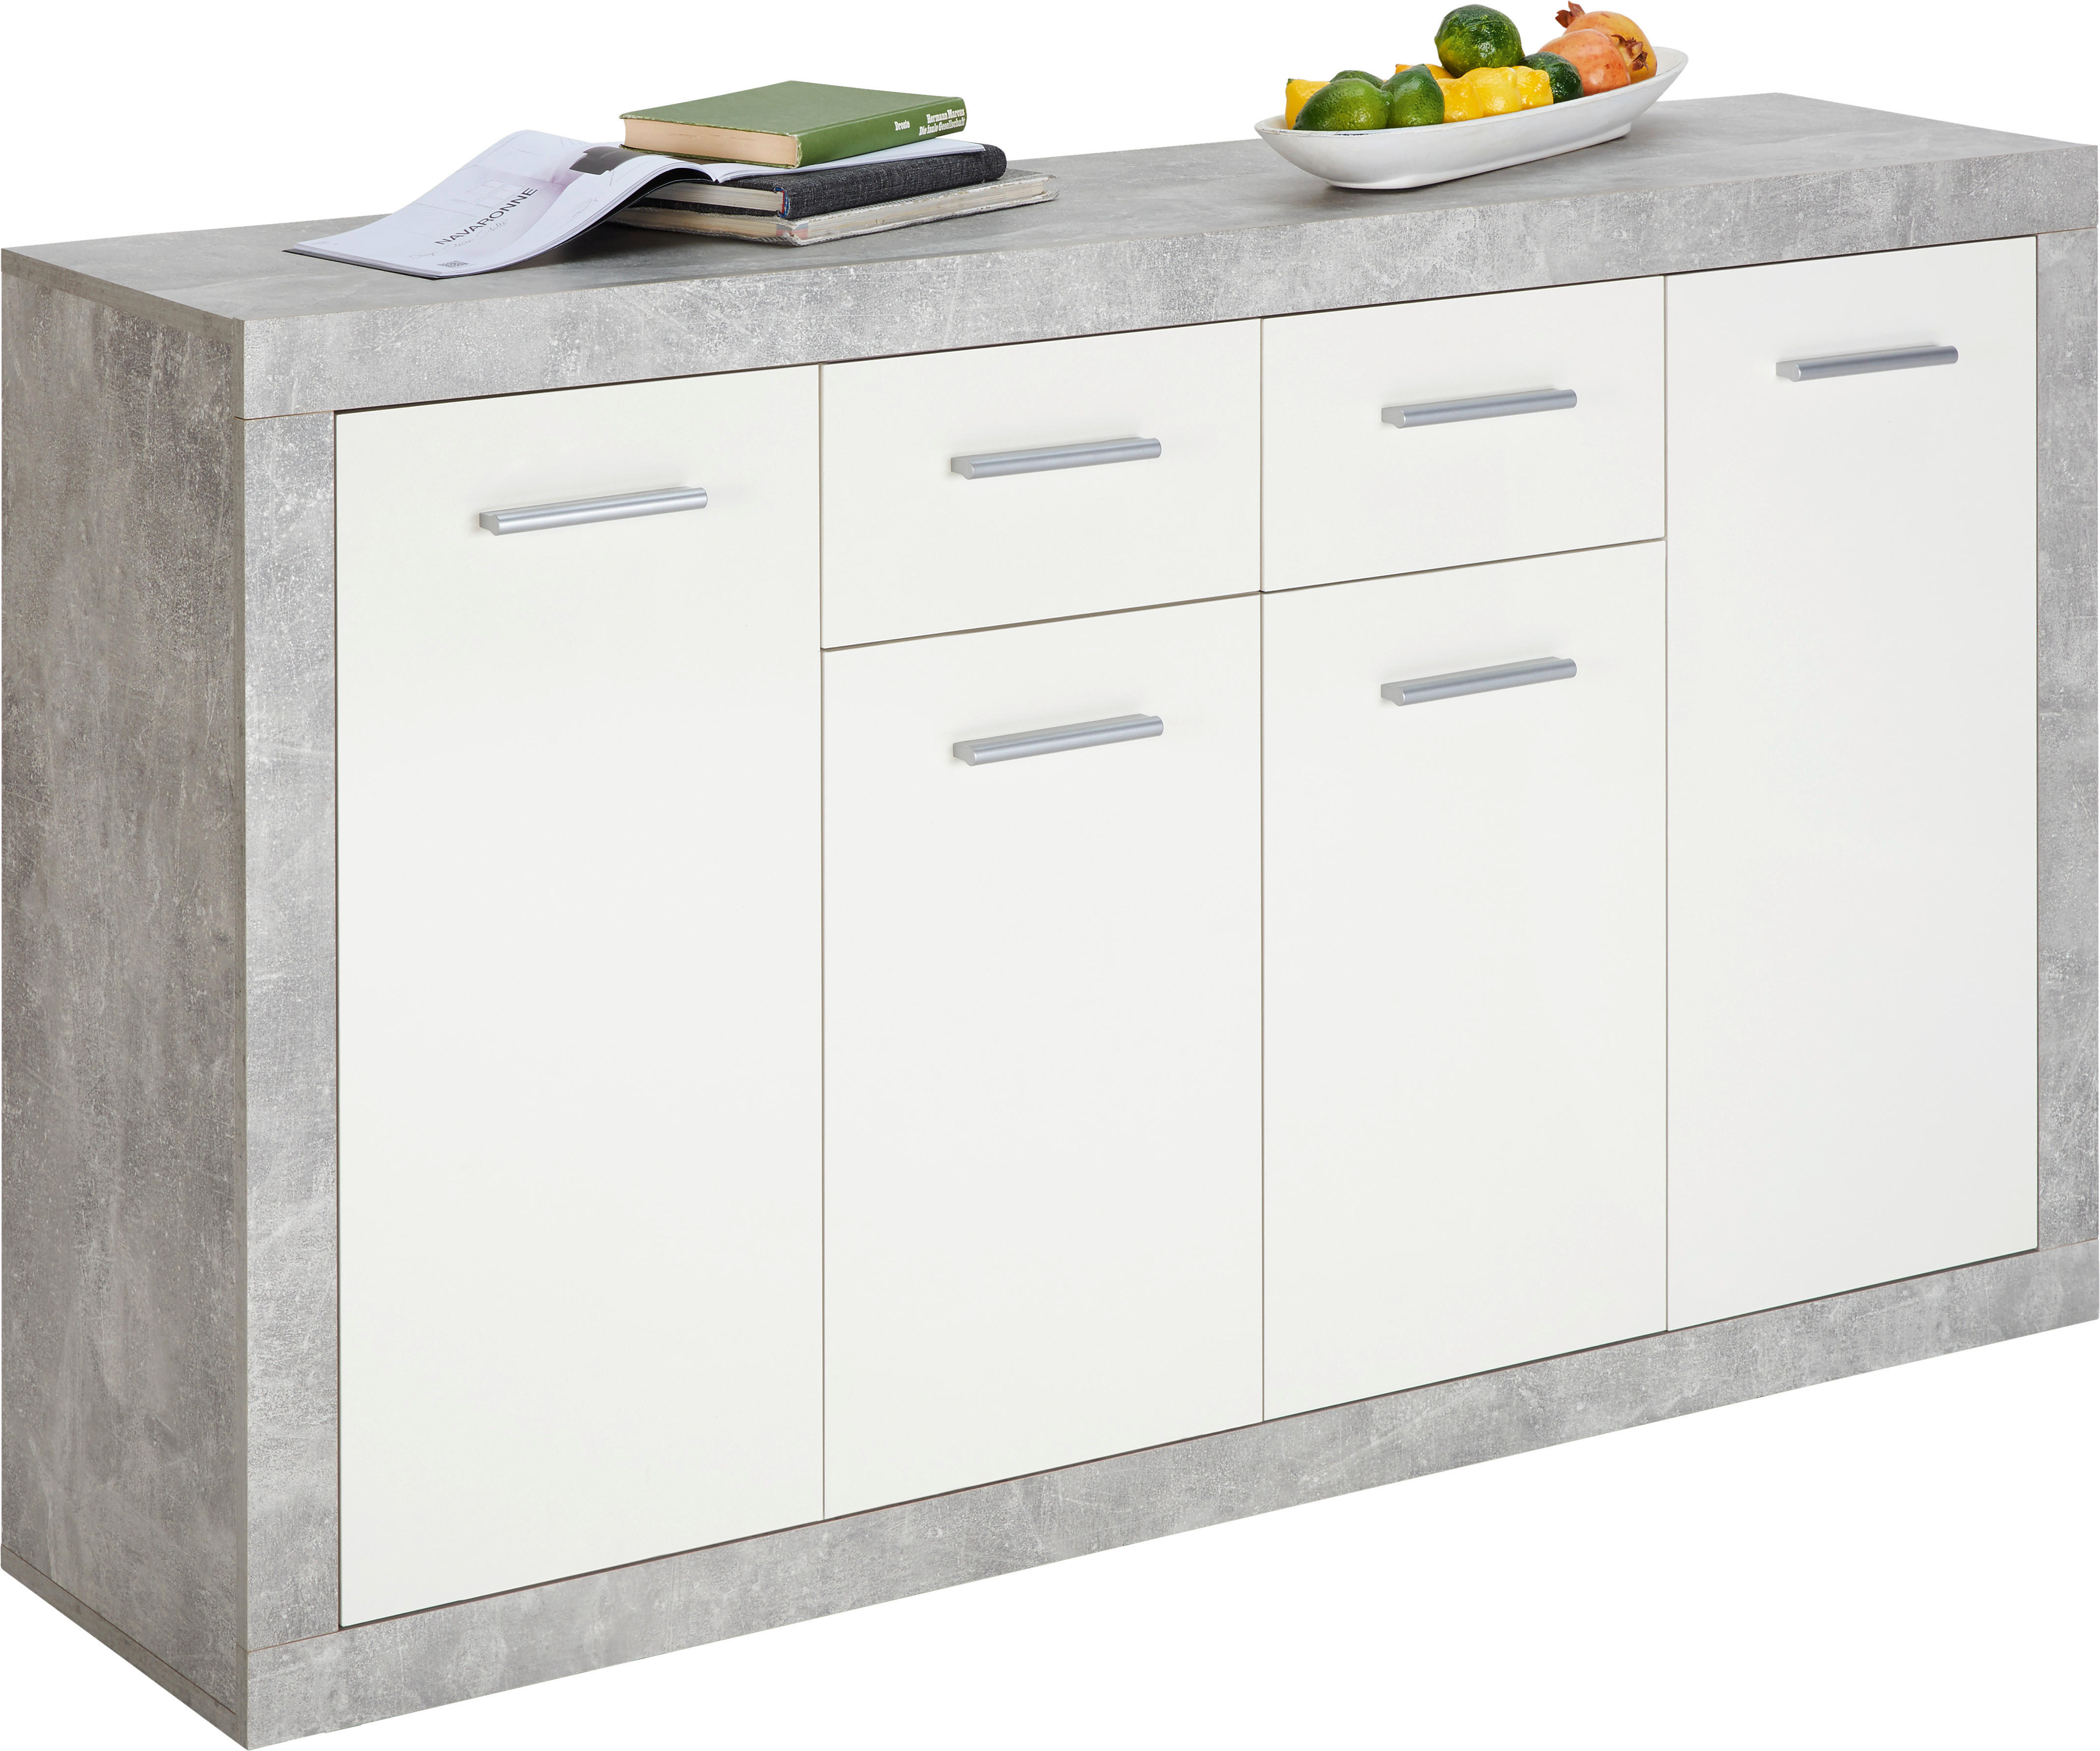 KOMMODE Grau, Weiß  - Silberfarben/Weiß, Design, Holzwerkstoff/Kunststoff (152/88/37cm) - Xora